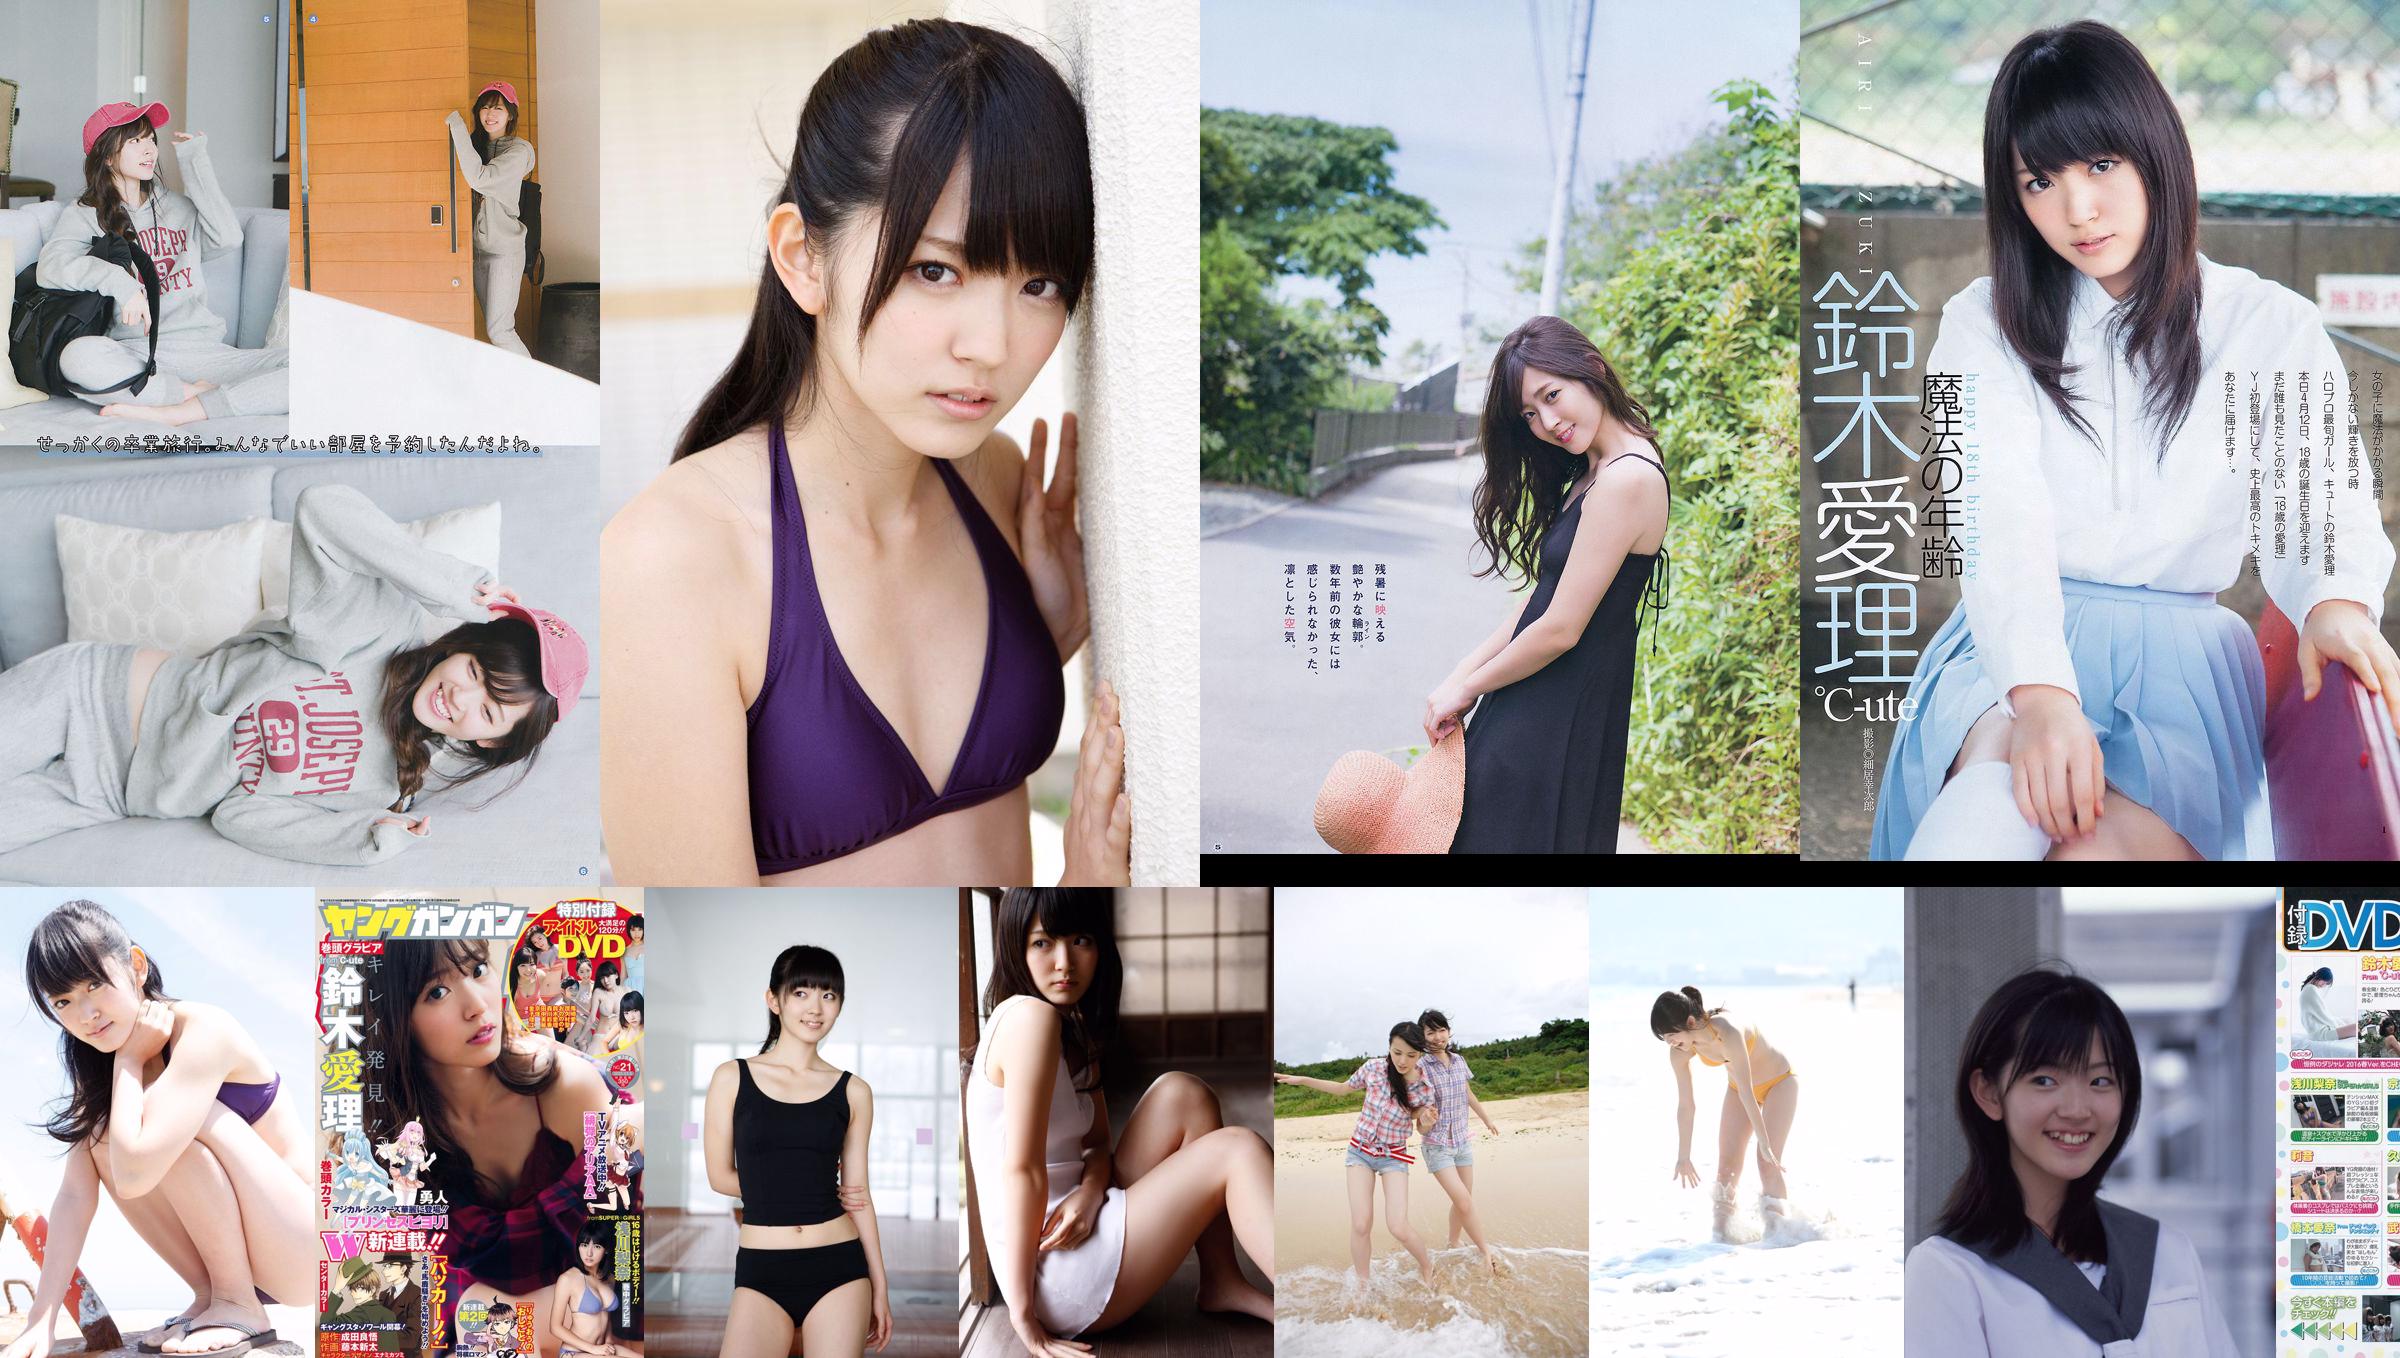 [Młody Gangan] Suzuki Airi Hoshina Mizuki 2015 nr 06 Photo Magazine No.3f1a57 Strona 8